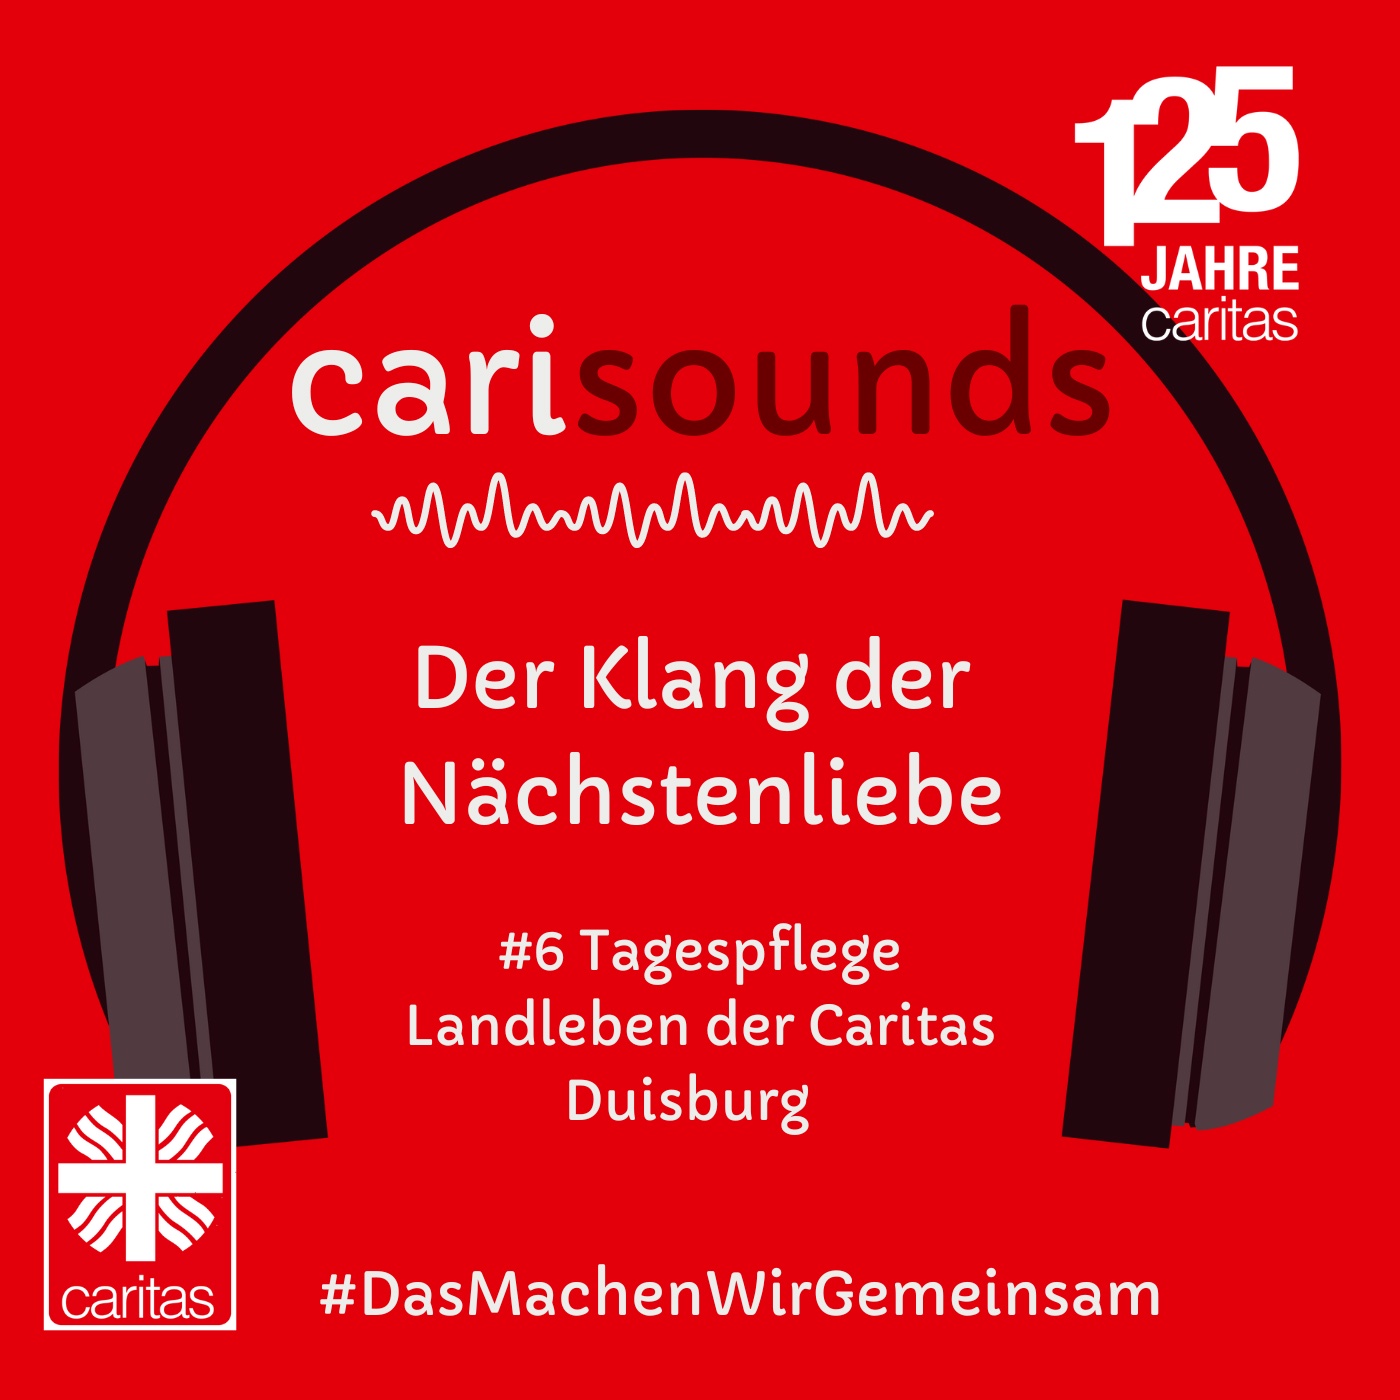 #6 carisounds - Der Klang der Nächstenliebe - Das Team der Tagespflege Landleben der Caritas Duisburg